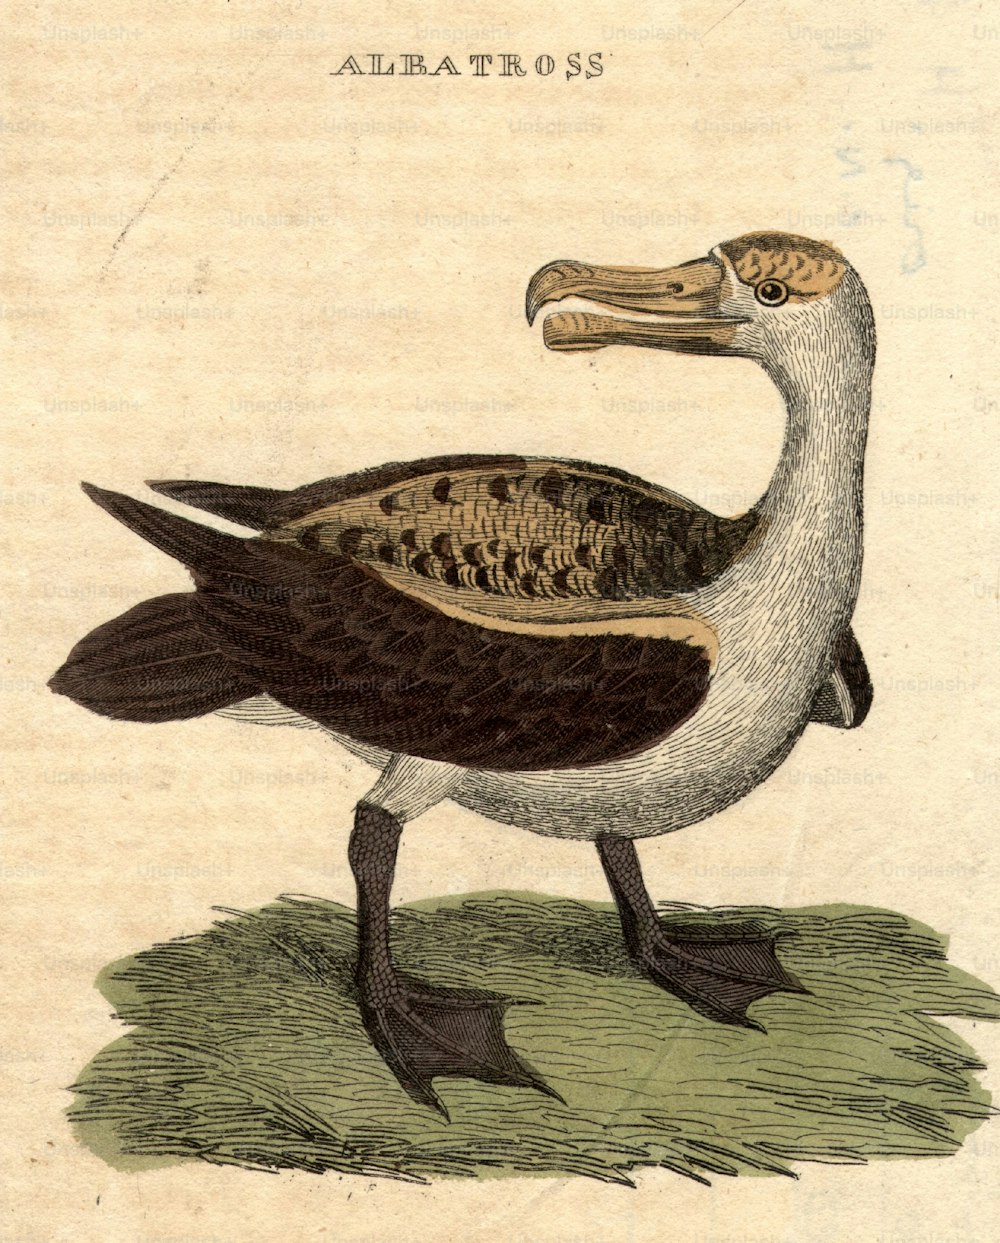 um 1800: Ein Albatros, ein großflügeliger Seevogel, der lange Flüge machen kann.  (Foto von Hulton Archive / Getty Images)